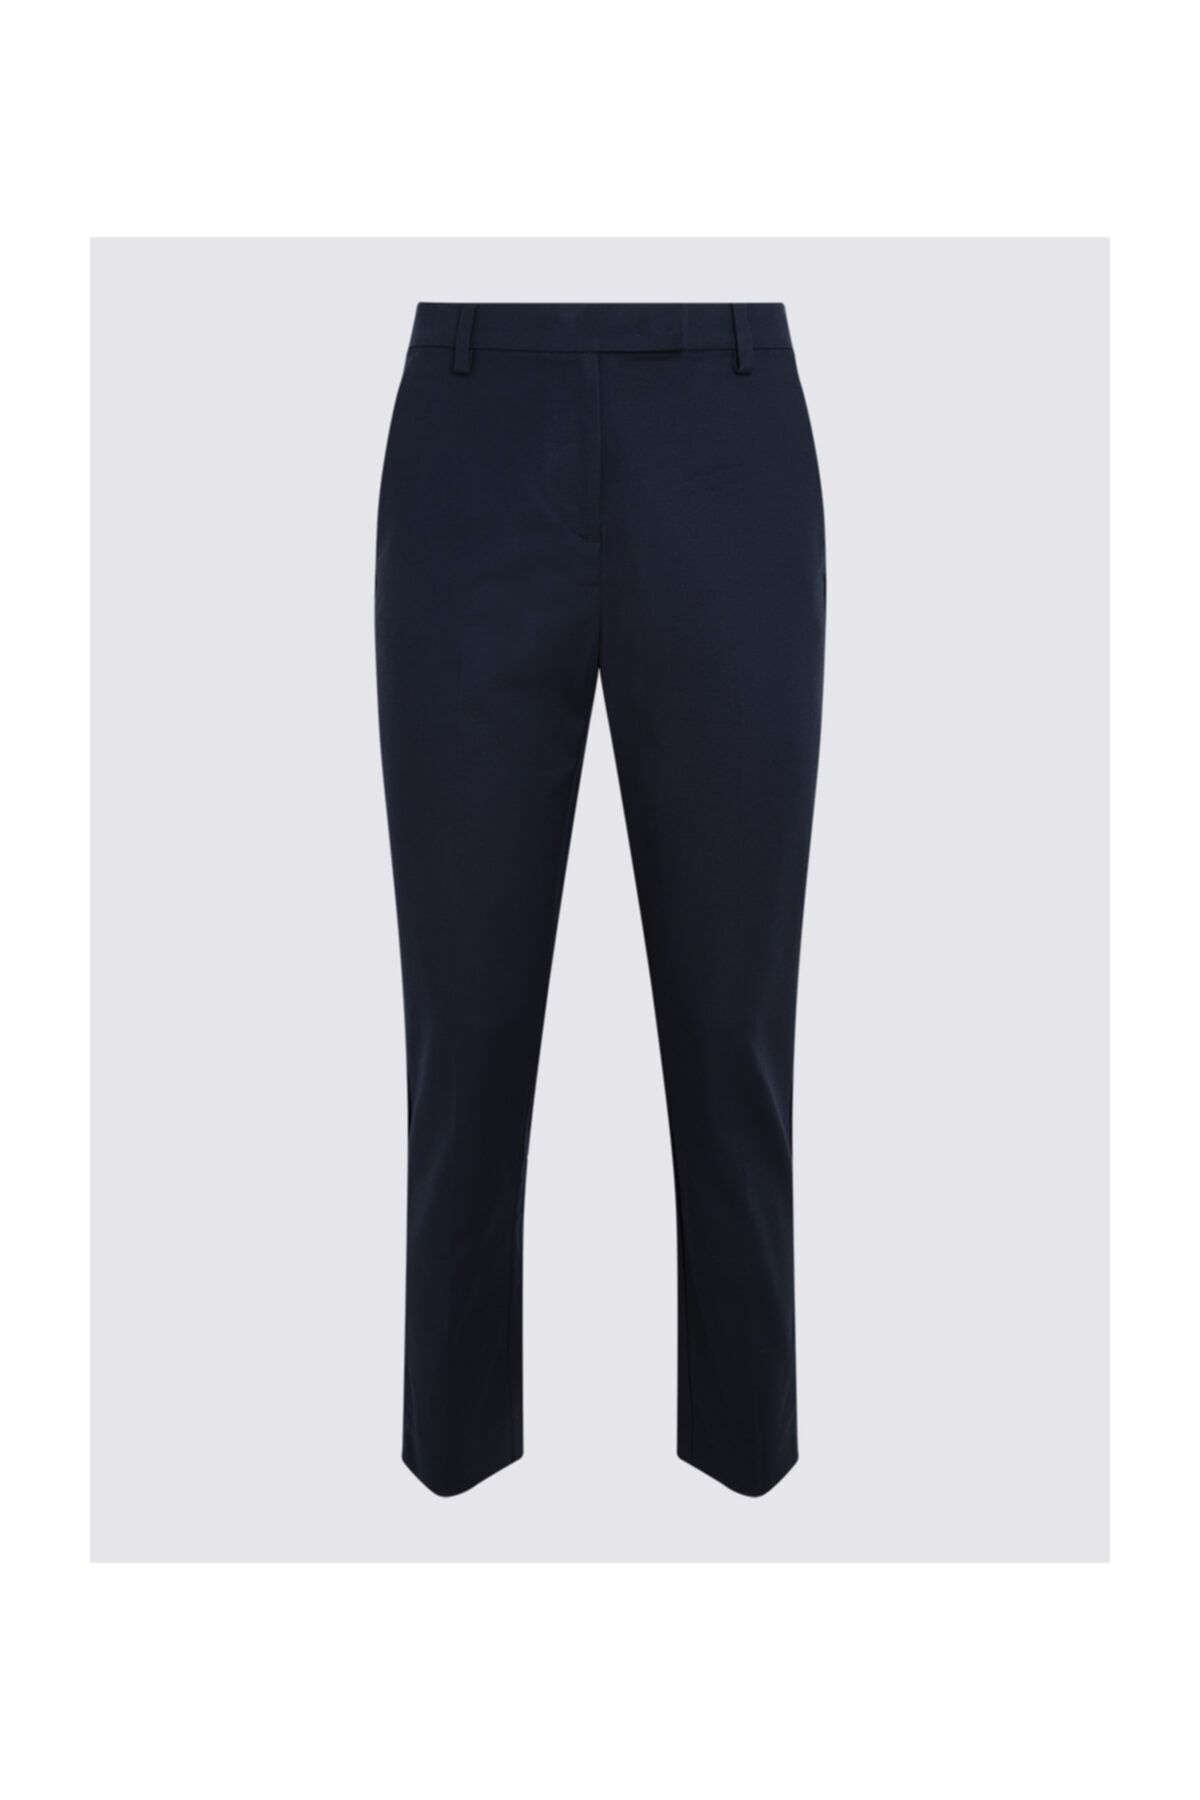 Marks & Spencer Kadın Lacivert 7/8 Pamuklu Pantolon T59005602X